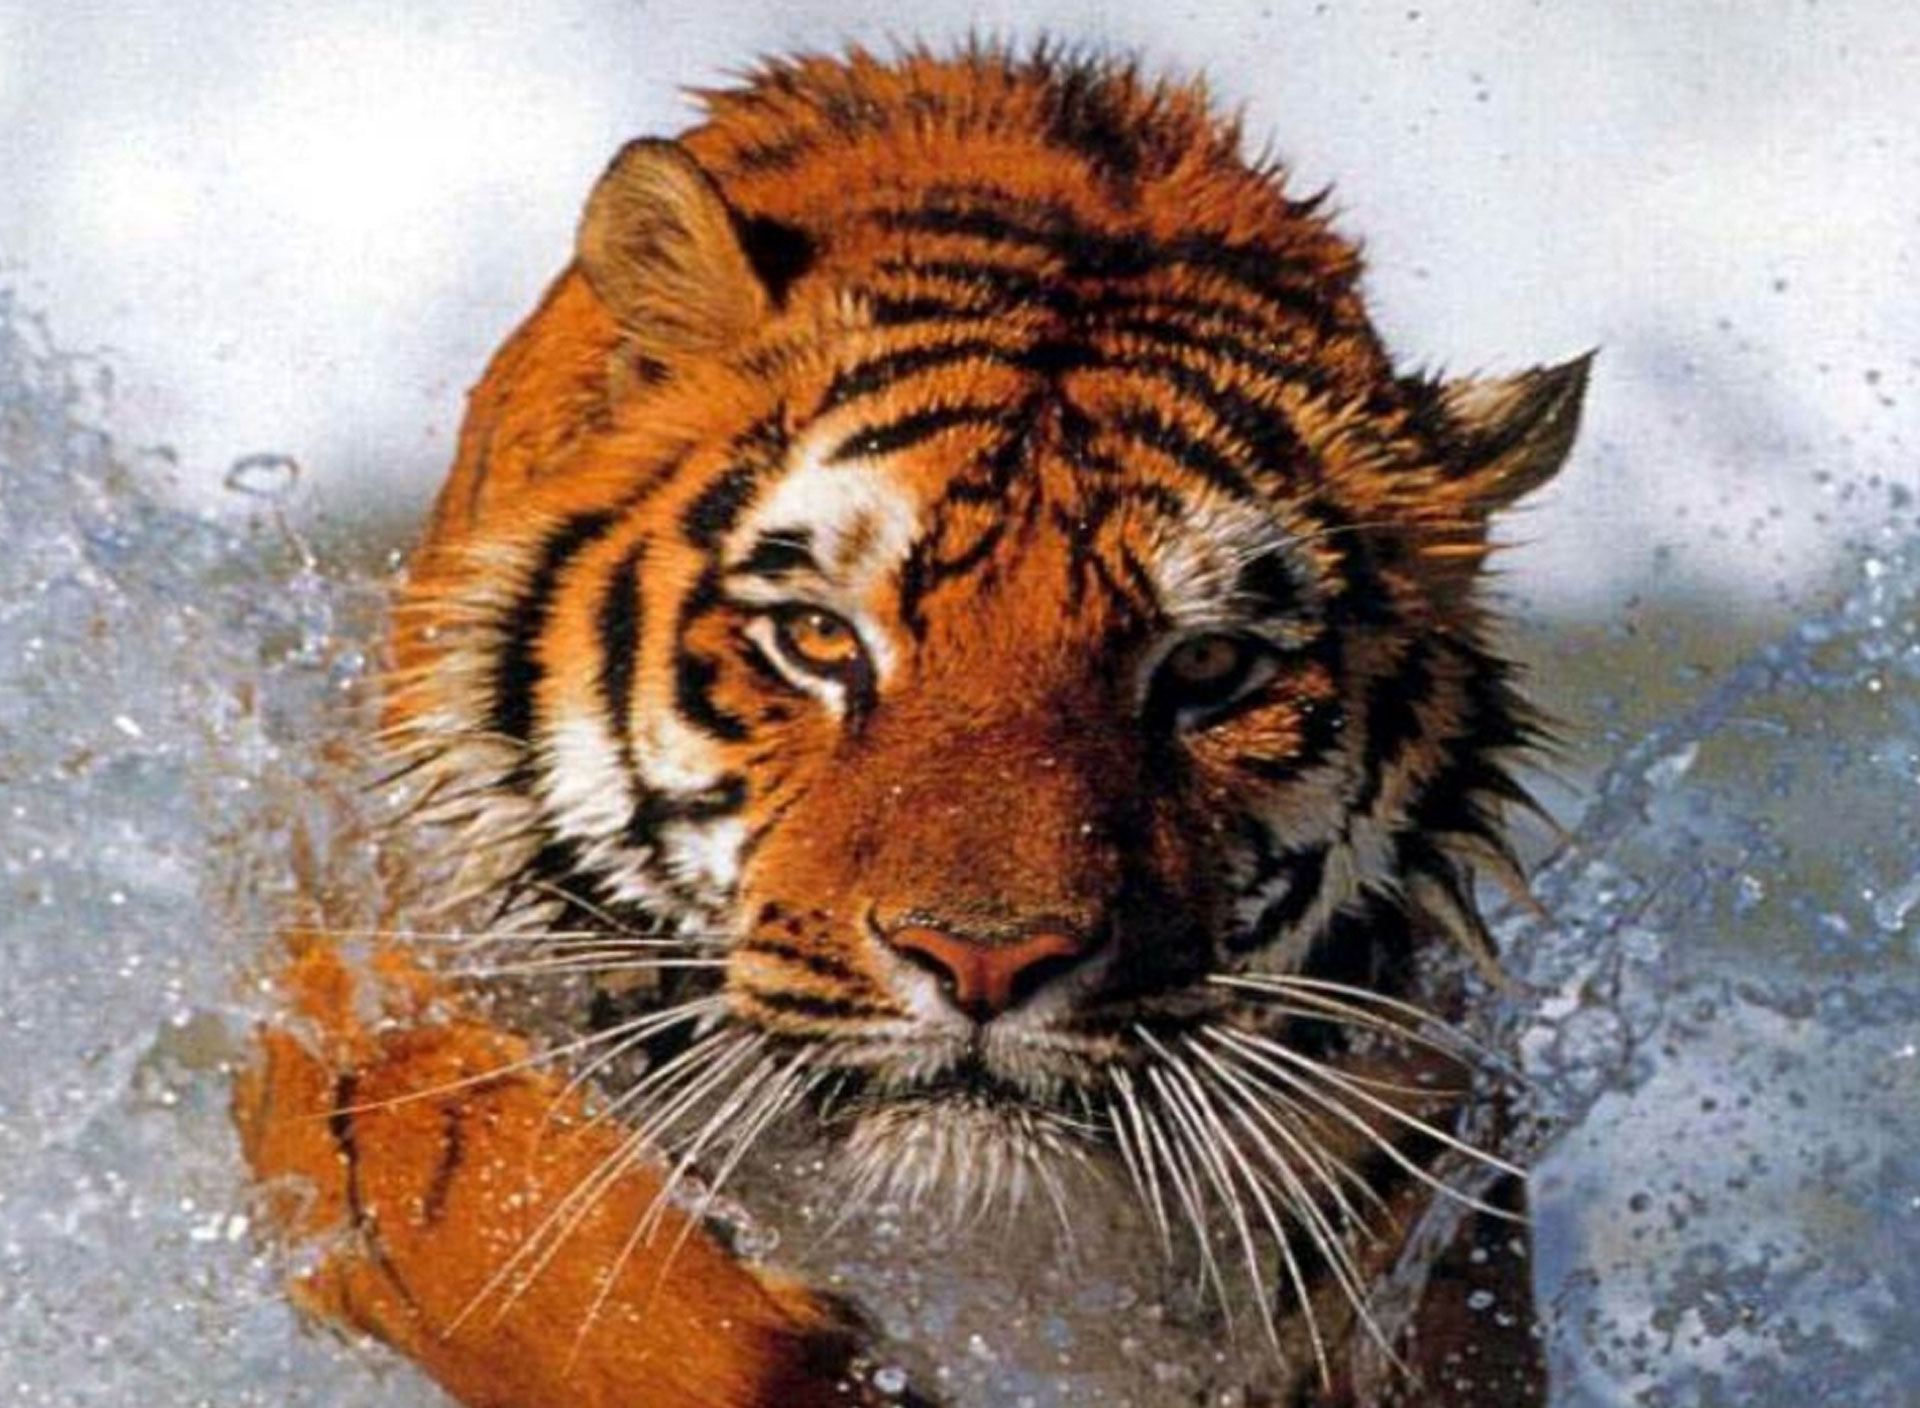 タイガー壁紙,虎,ベンガルトラ,野生動物,シベリアンタイガー,ネコ科